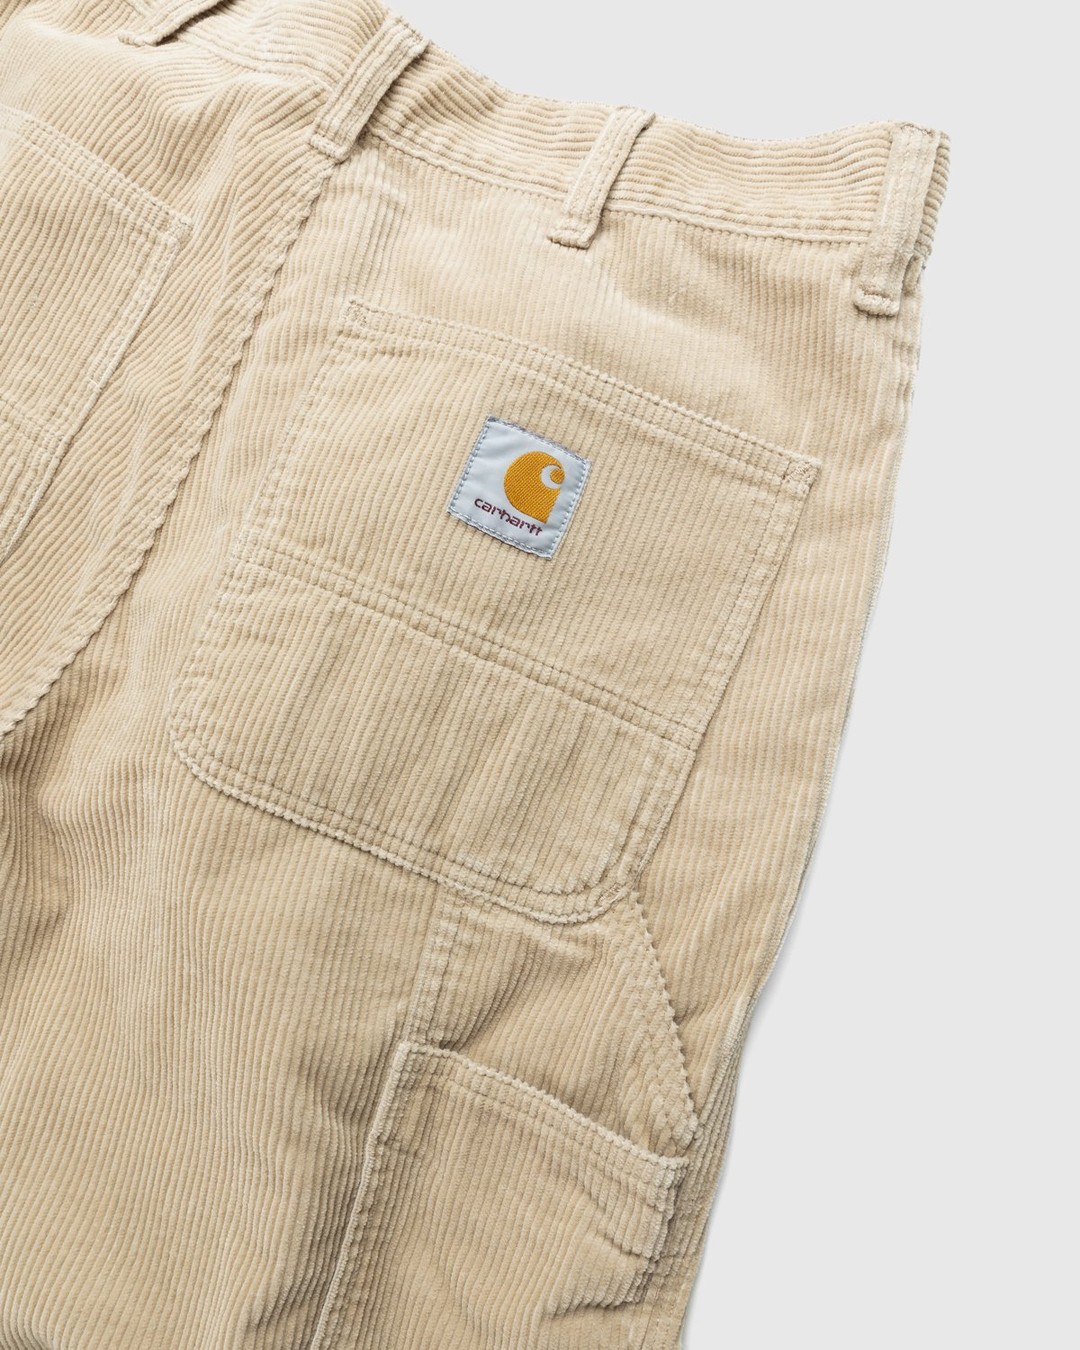 Carhartt WIP – Ruck Single Knee Pant Beige - Trousers - Brown - Image 3